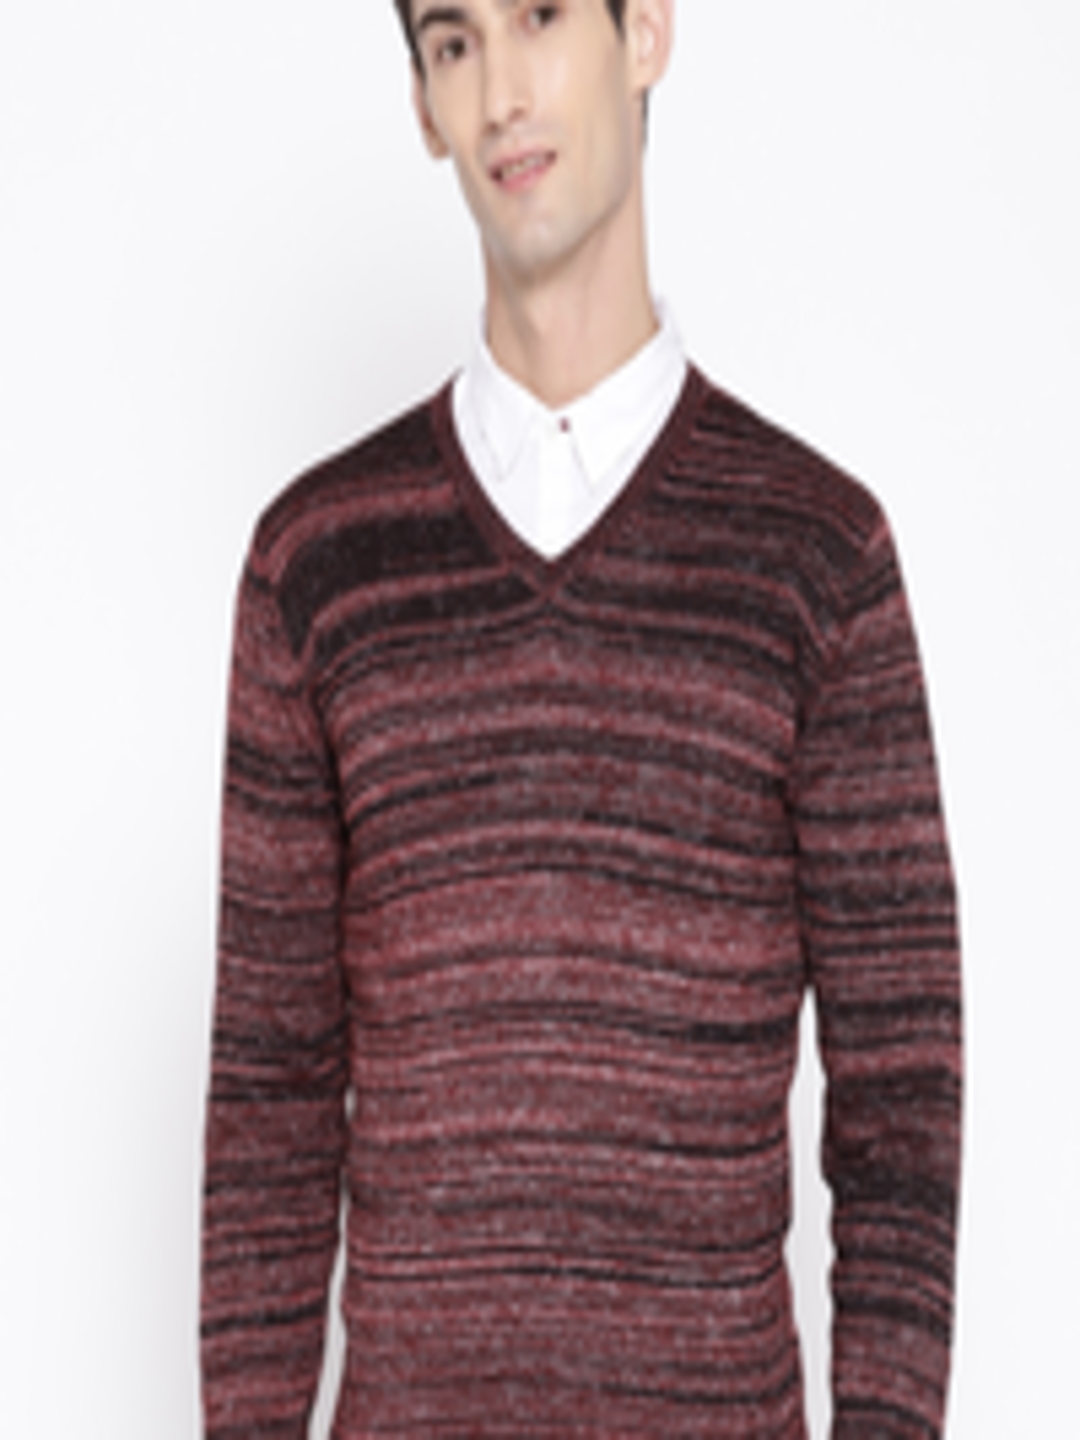 Buy Blackberrys Men Burgundy & Black Self Striped Sweater - Sweaters ...